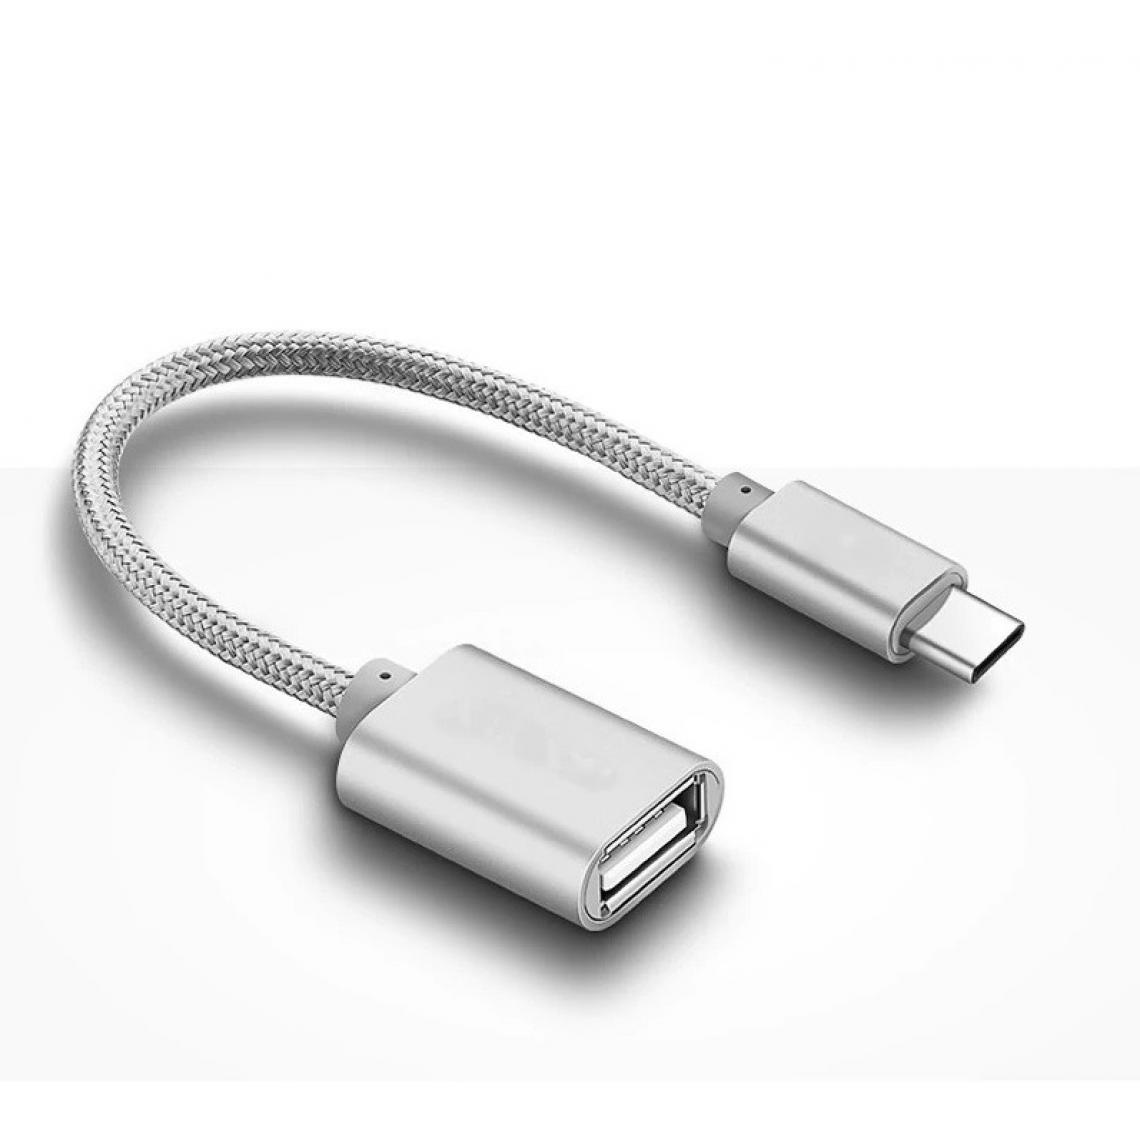 Shot - Adaptateur Type C/USB pour XIAOMI Mi 8 Smartphone & MAC USB-C Clef (ARGENT) - Autres accessoires smartphone